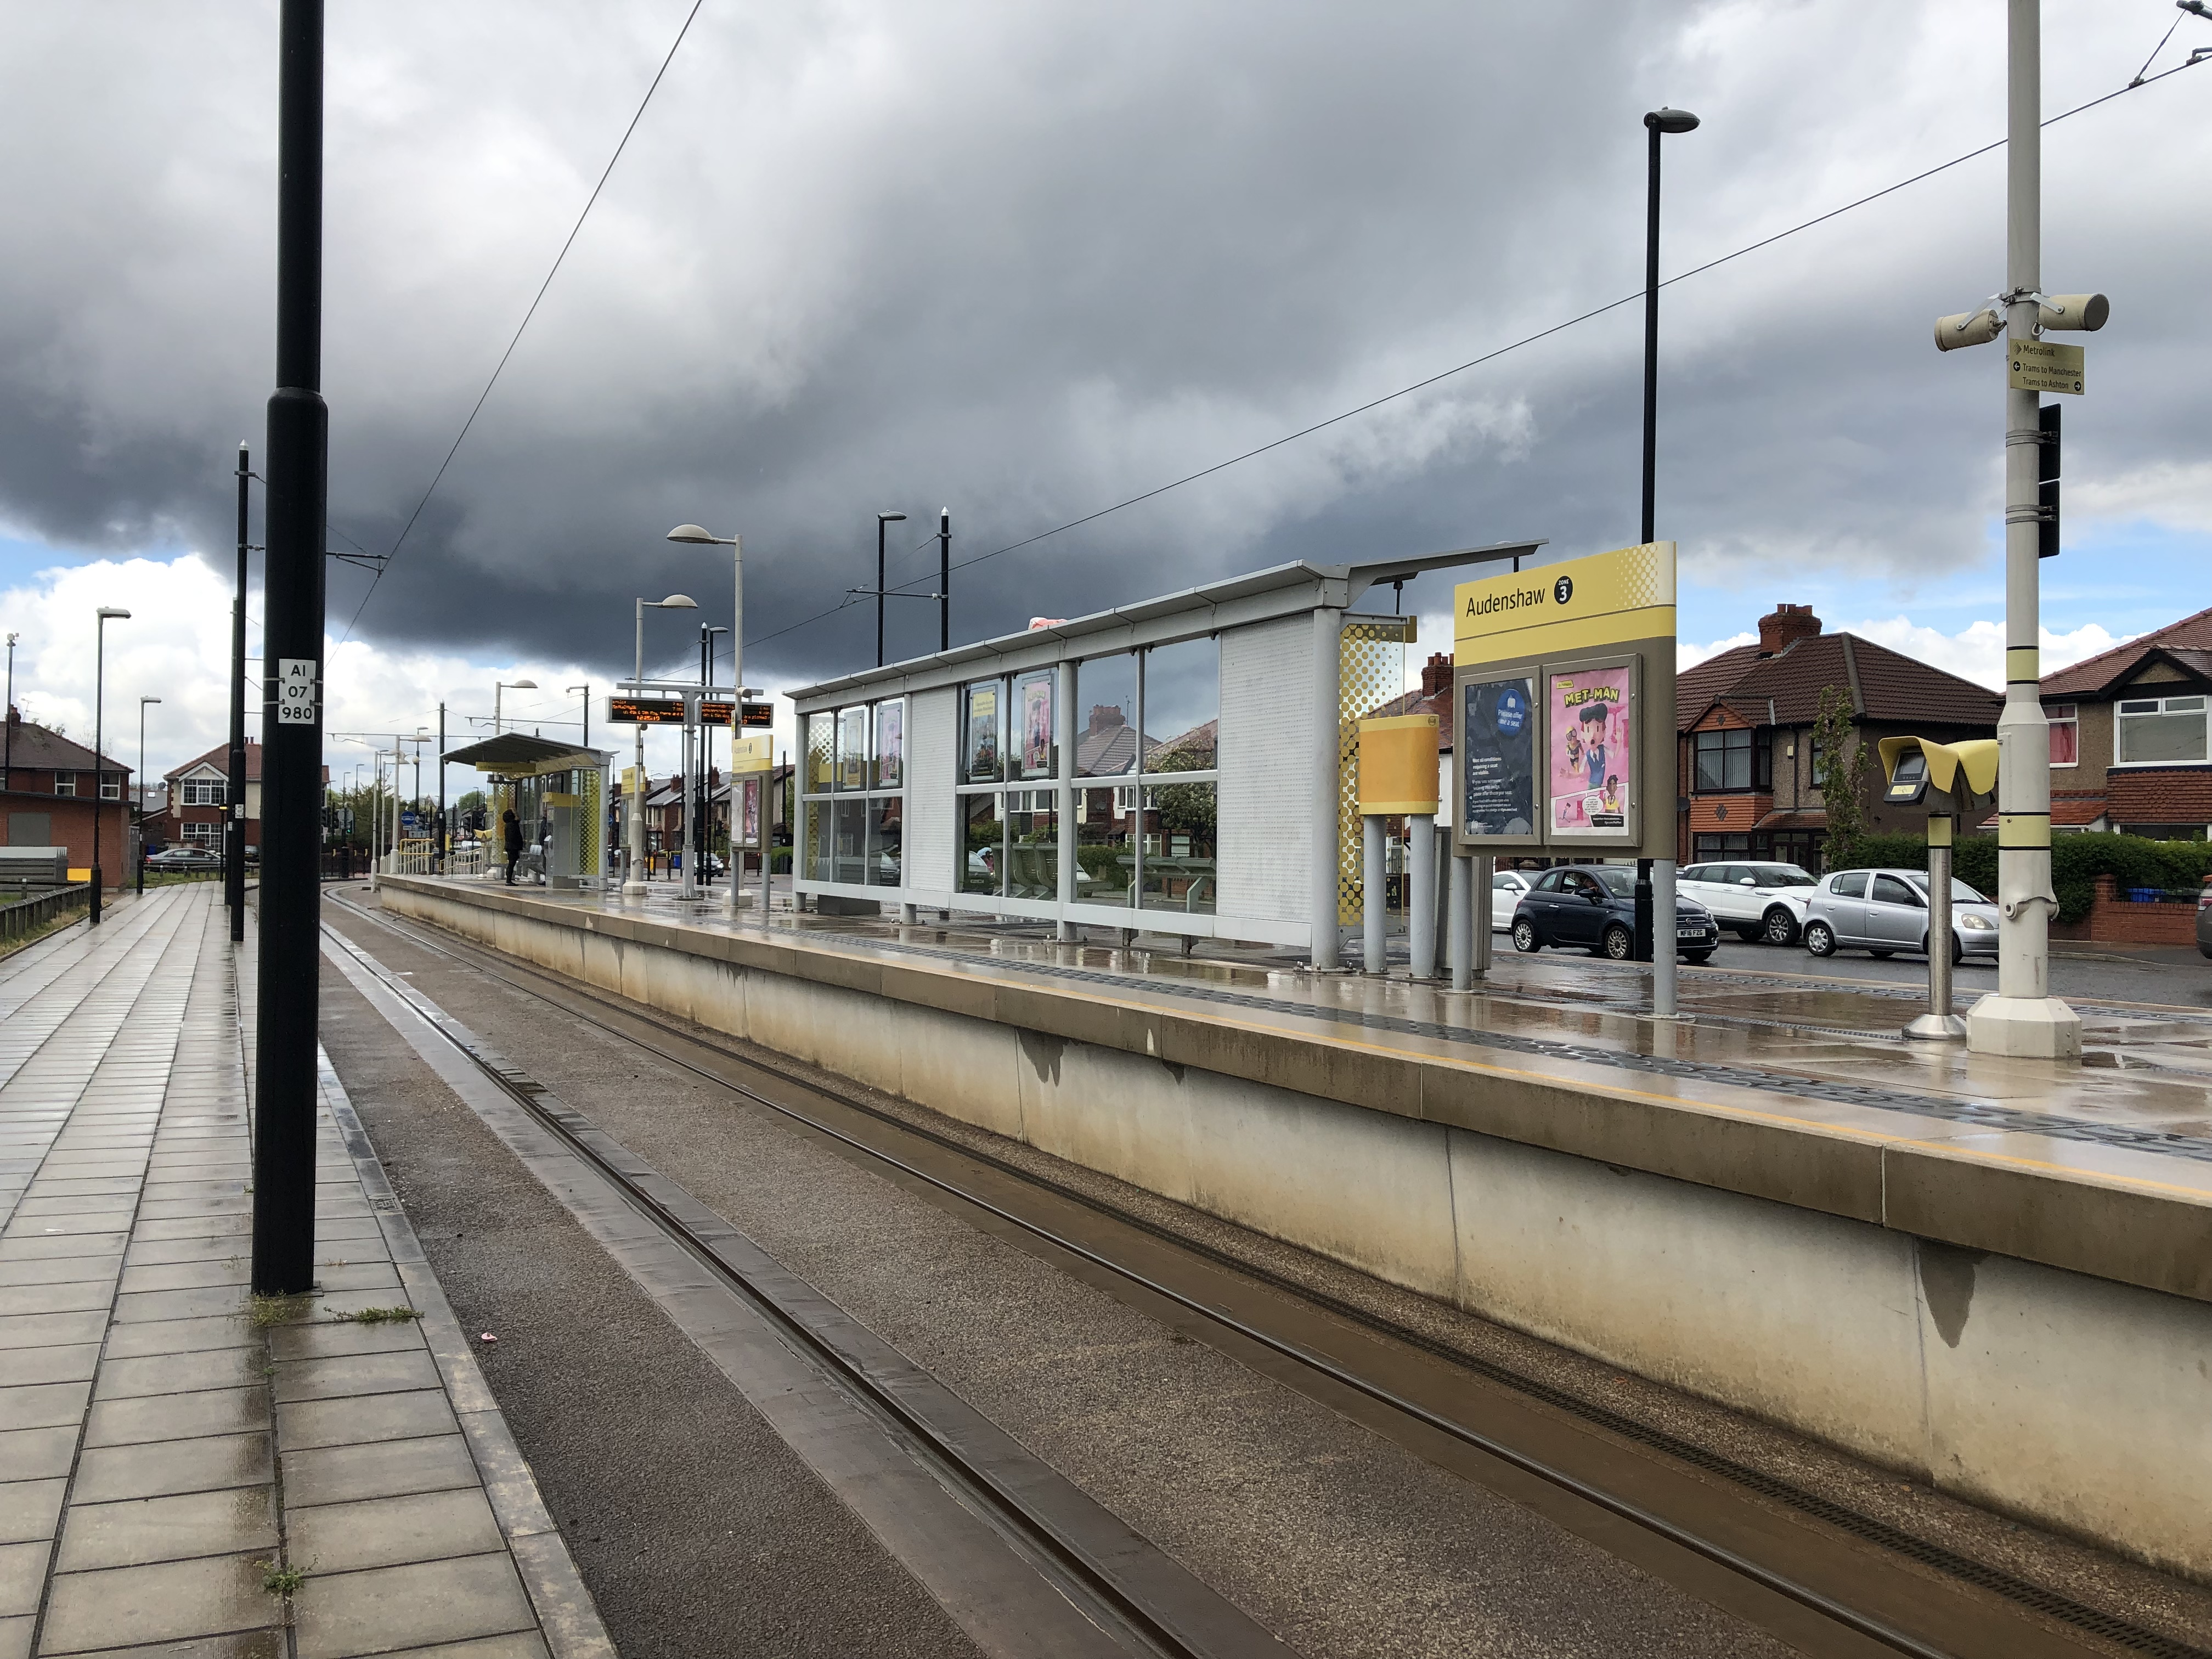 Audenshaw tram stop